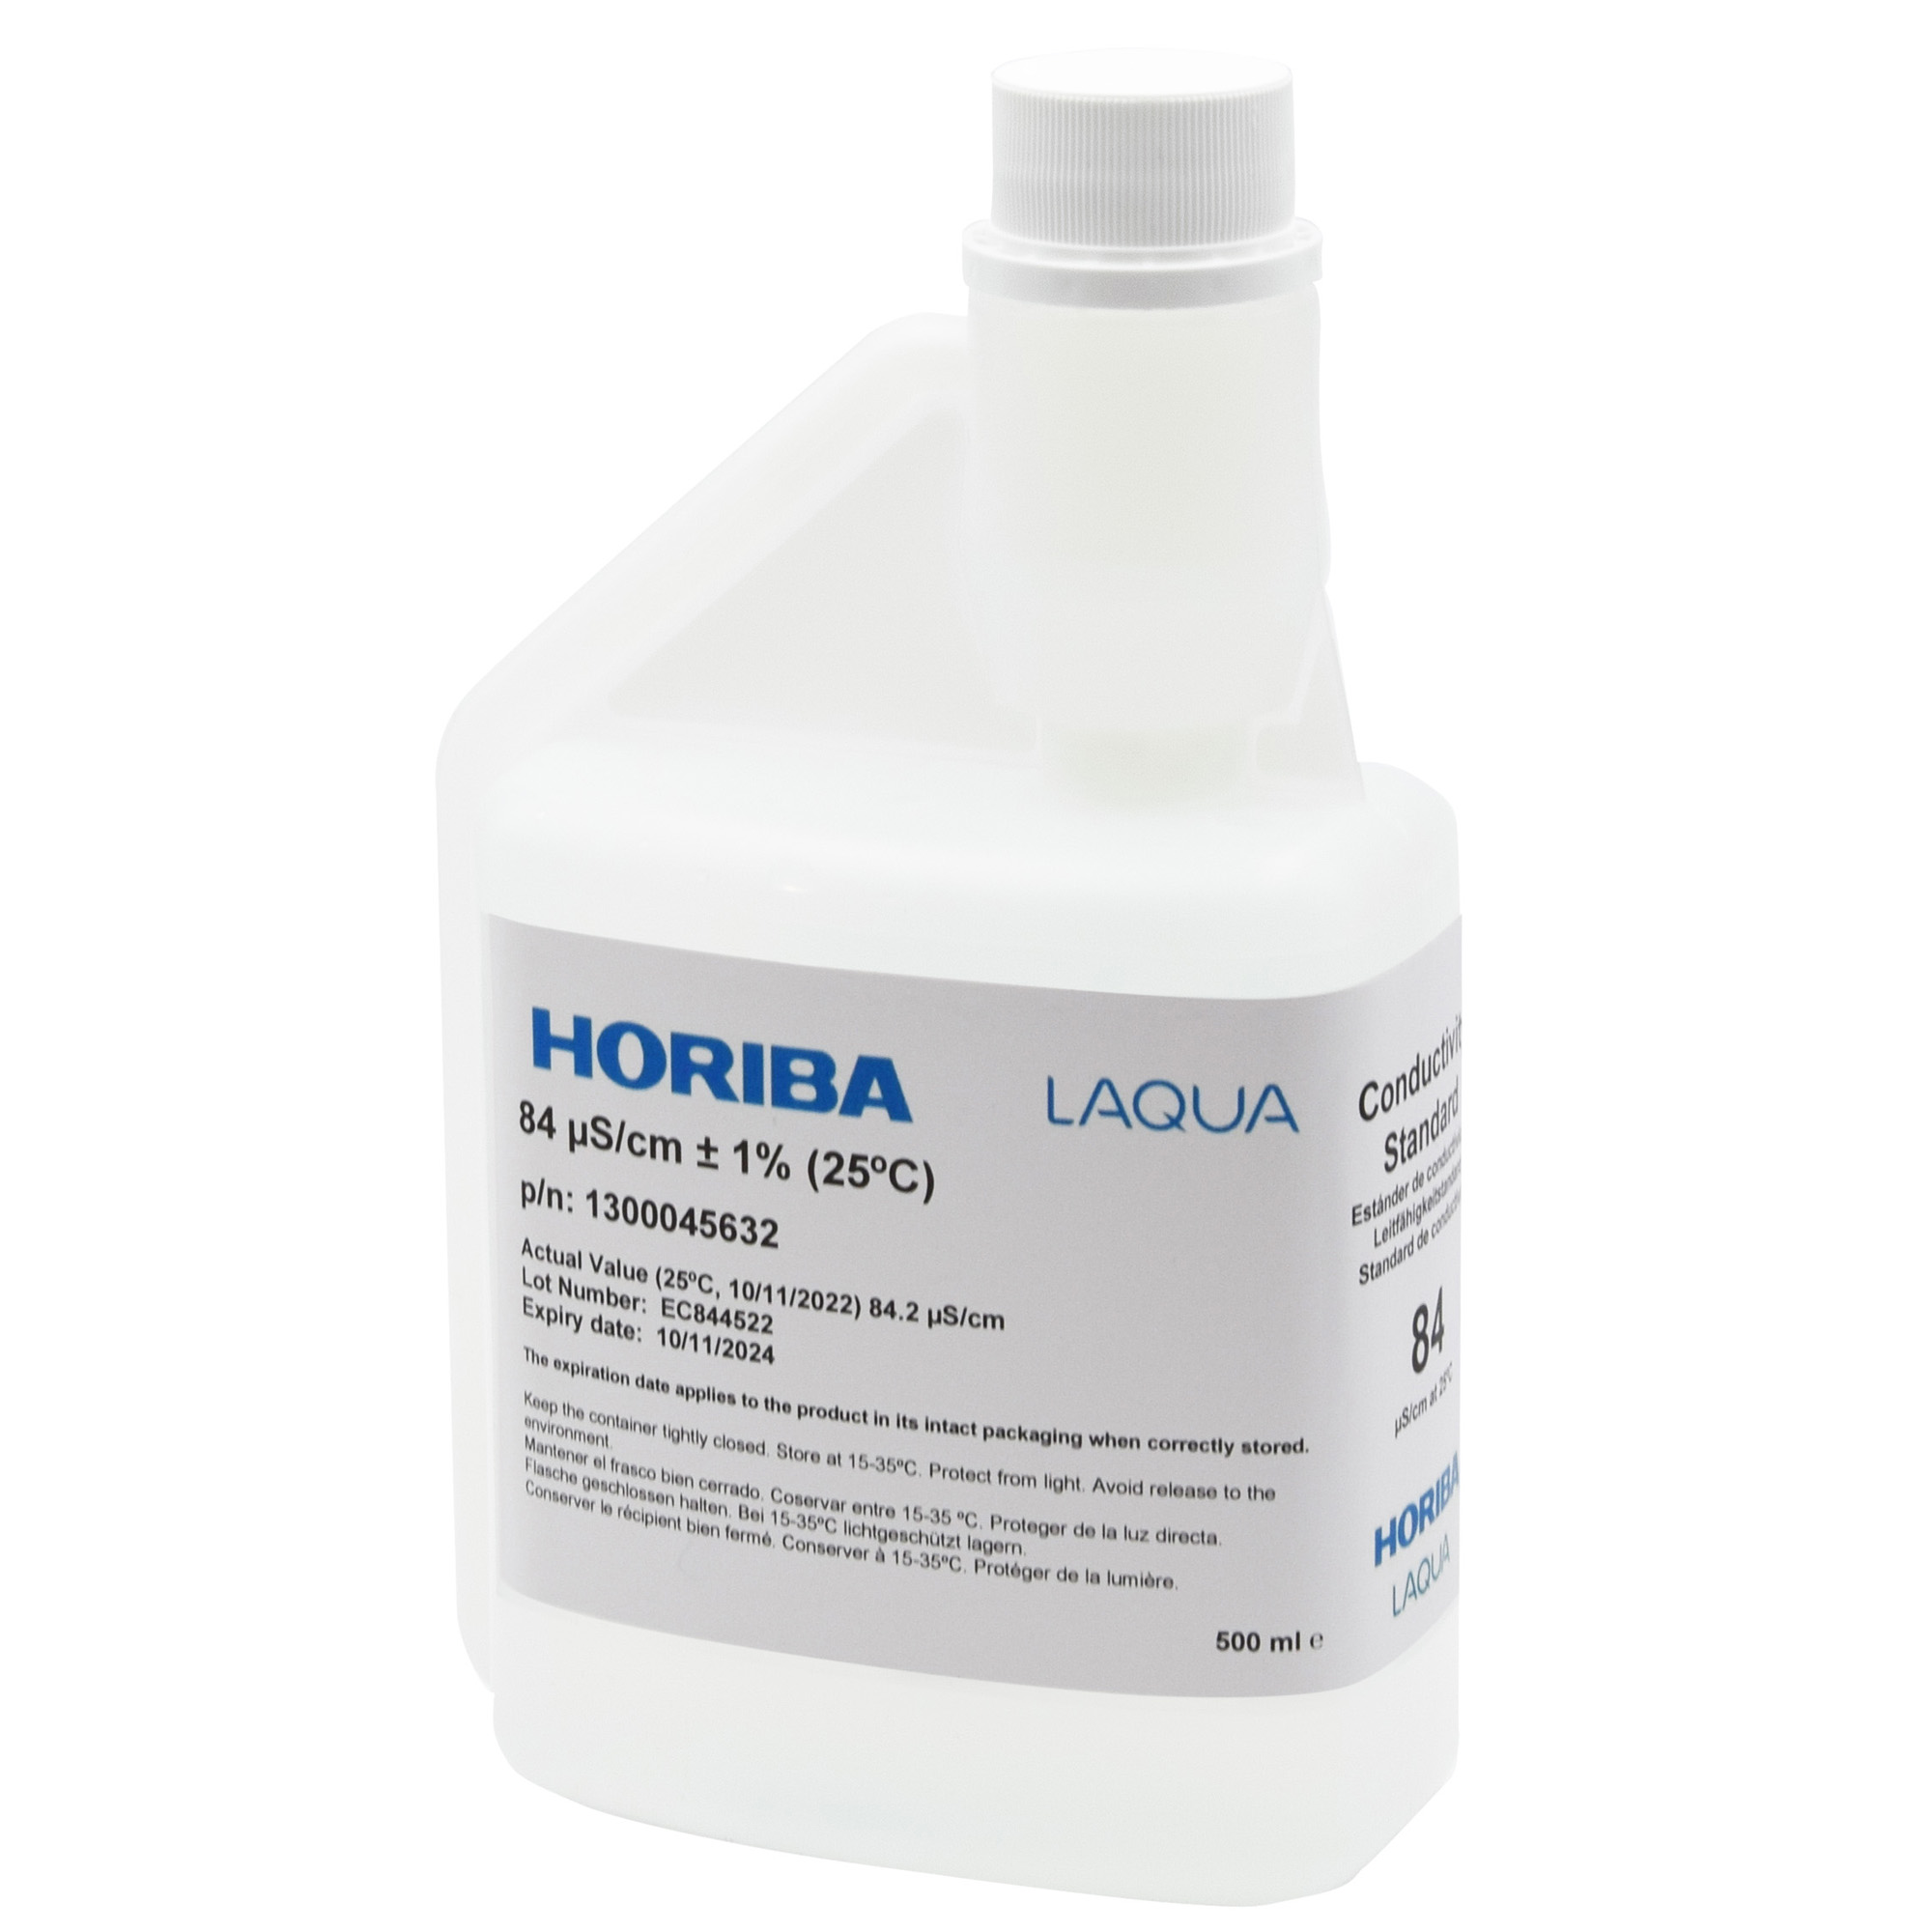 HORIBA 84 μS/cm Leitfähigkeitskalibrierlösung 500ml (500-EC-84)